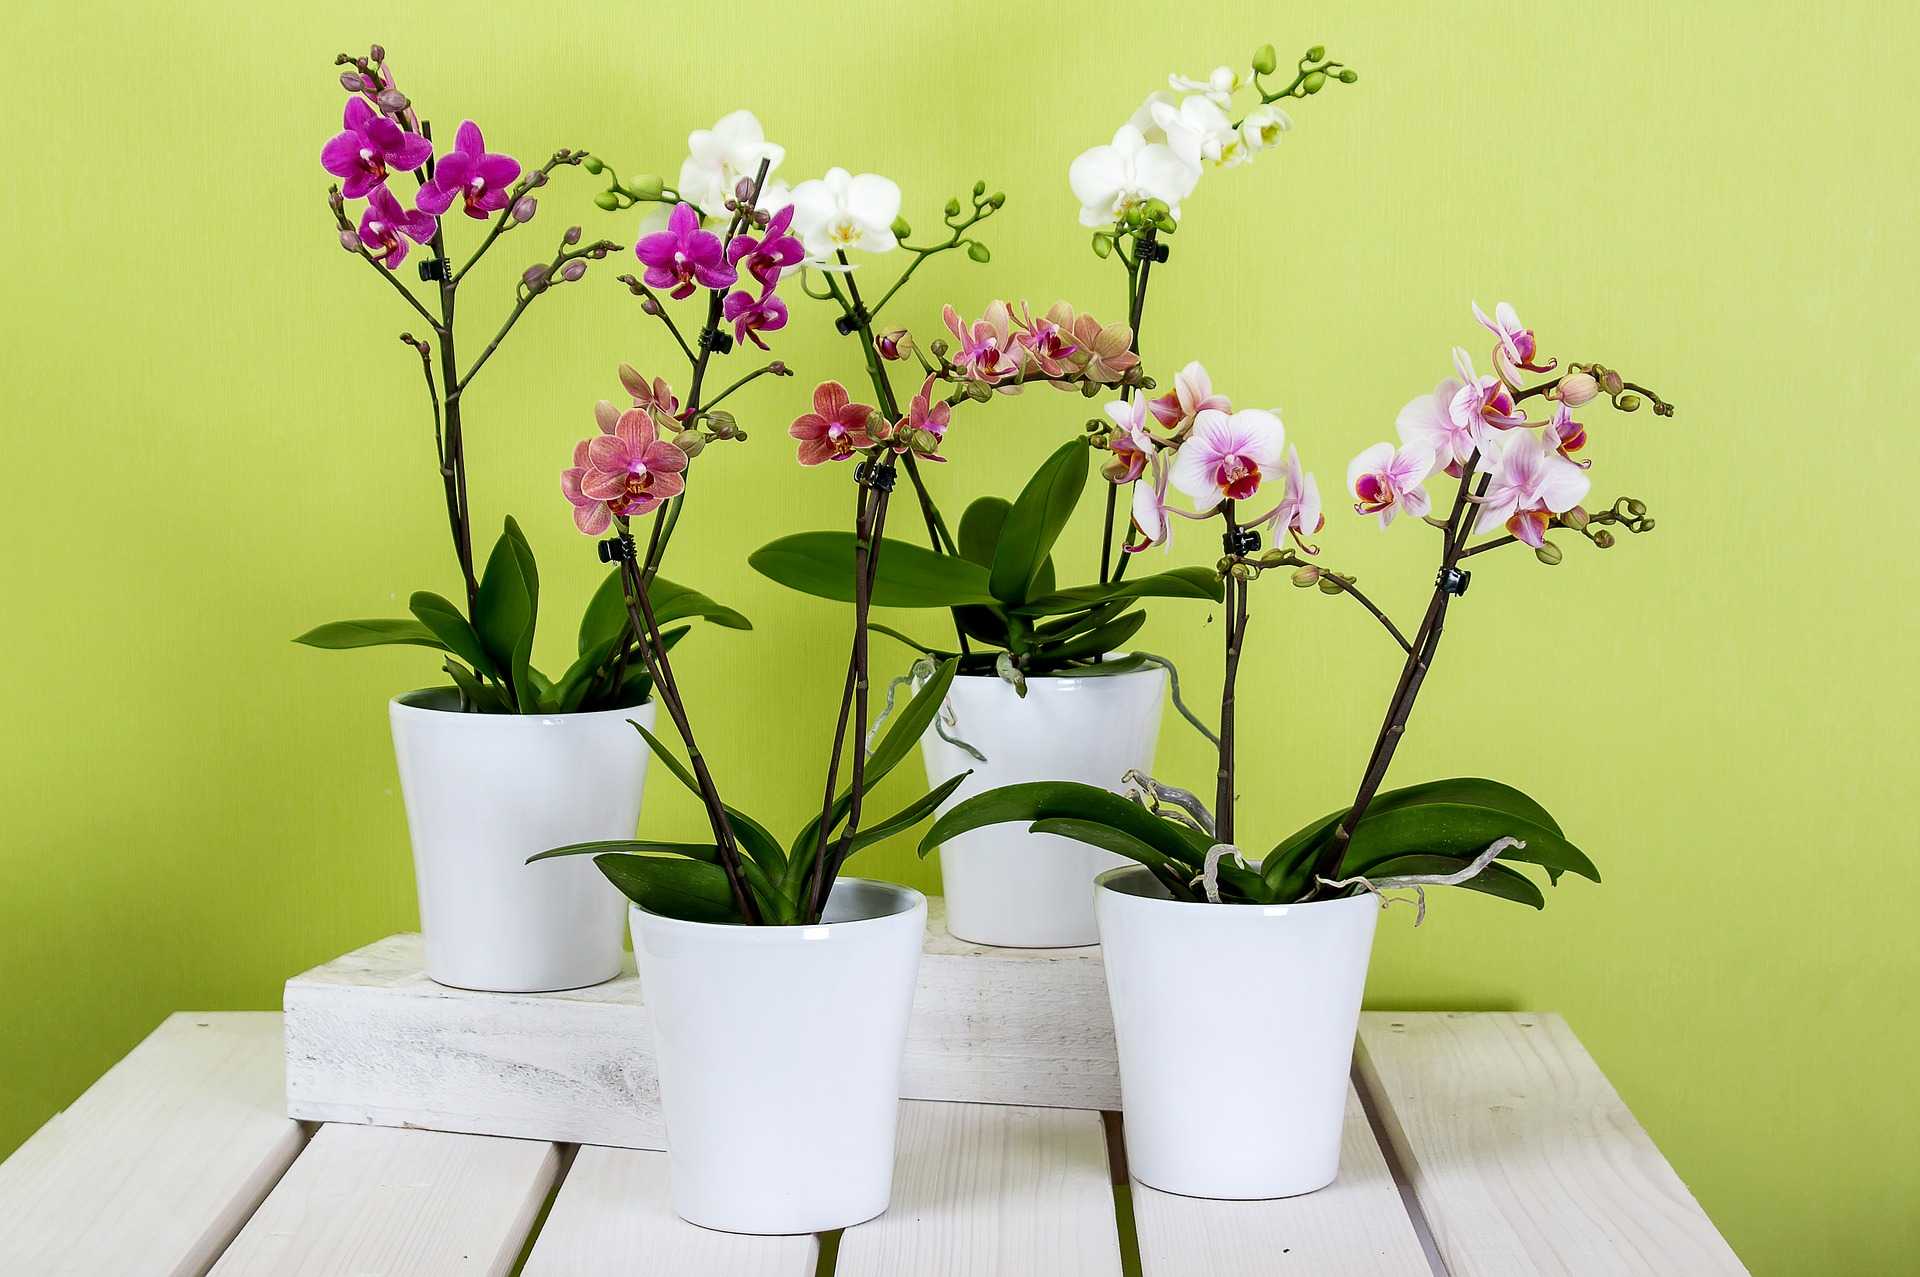 Где можно выращивать орхидеи: на блоках, садовом участке, в теплице, на какое окно лучше посадить в квартире?